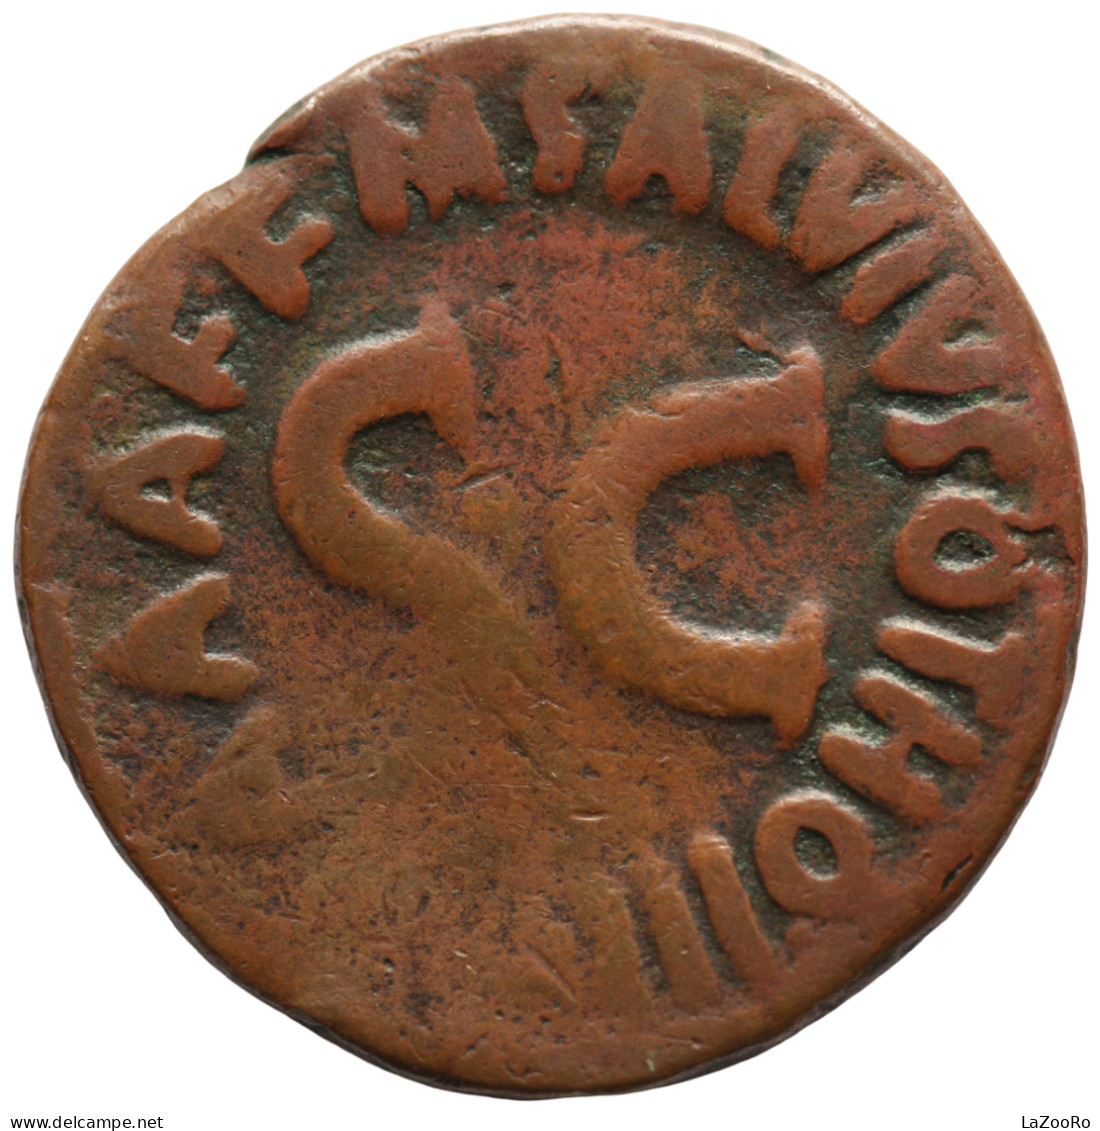 LaZooRo: Roman Empire - AE As Of Augustus (27 BC-AD 14), M. Salvius Otho, Moneyer - Les Julio-Claudiens (-27 à 69)